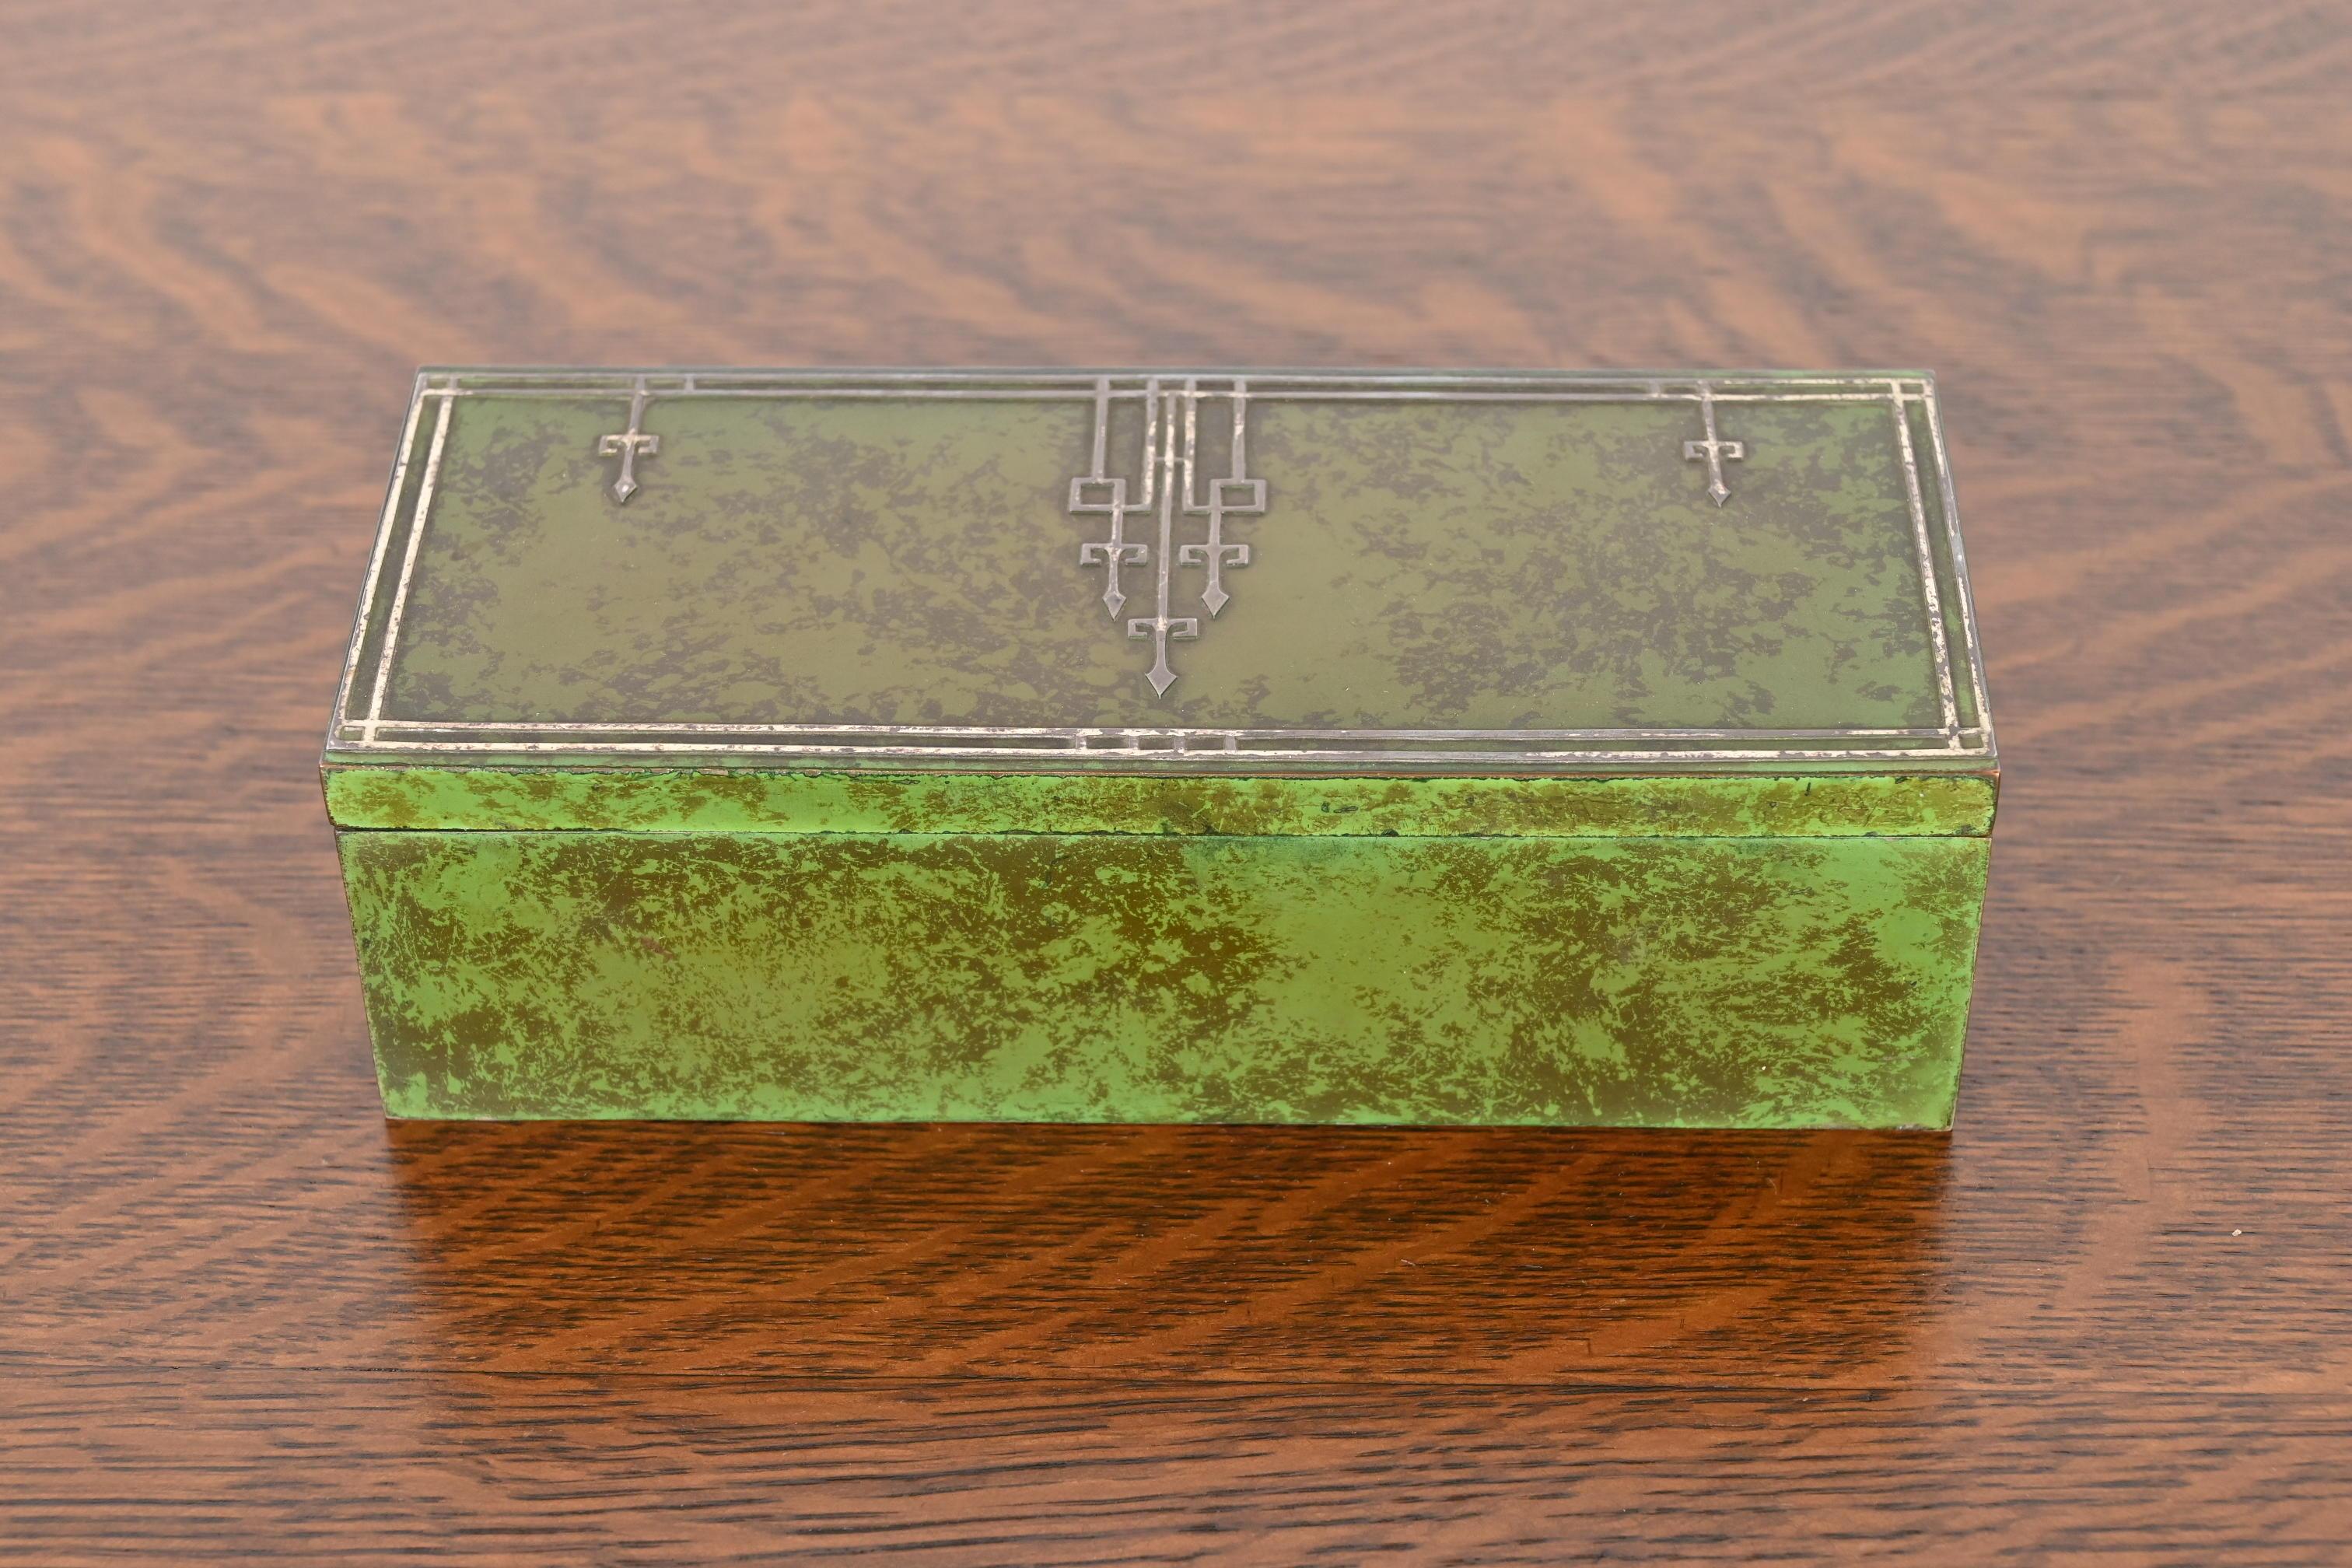 Magnifique boîte à cigares d'époque Arts & Crafts à patine verte vert-de-gris

Par Heintz Art Metal Shop

États-Unis d'Amérique, début du 20e siècle

Argent sterling sur bronze, avec intérieur en cèdre.

Dimensions : 8,5 